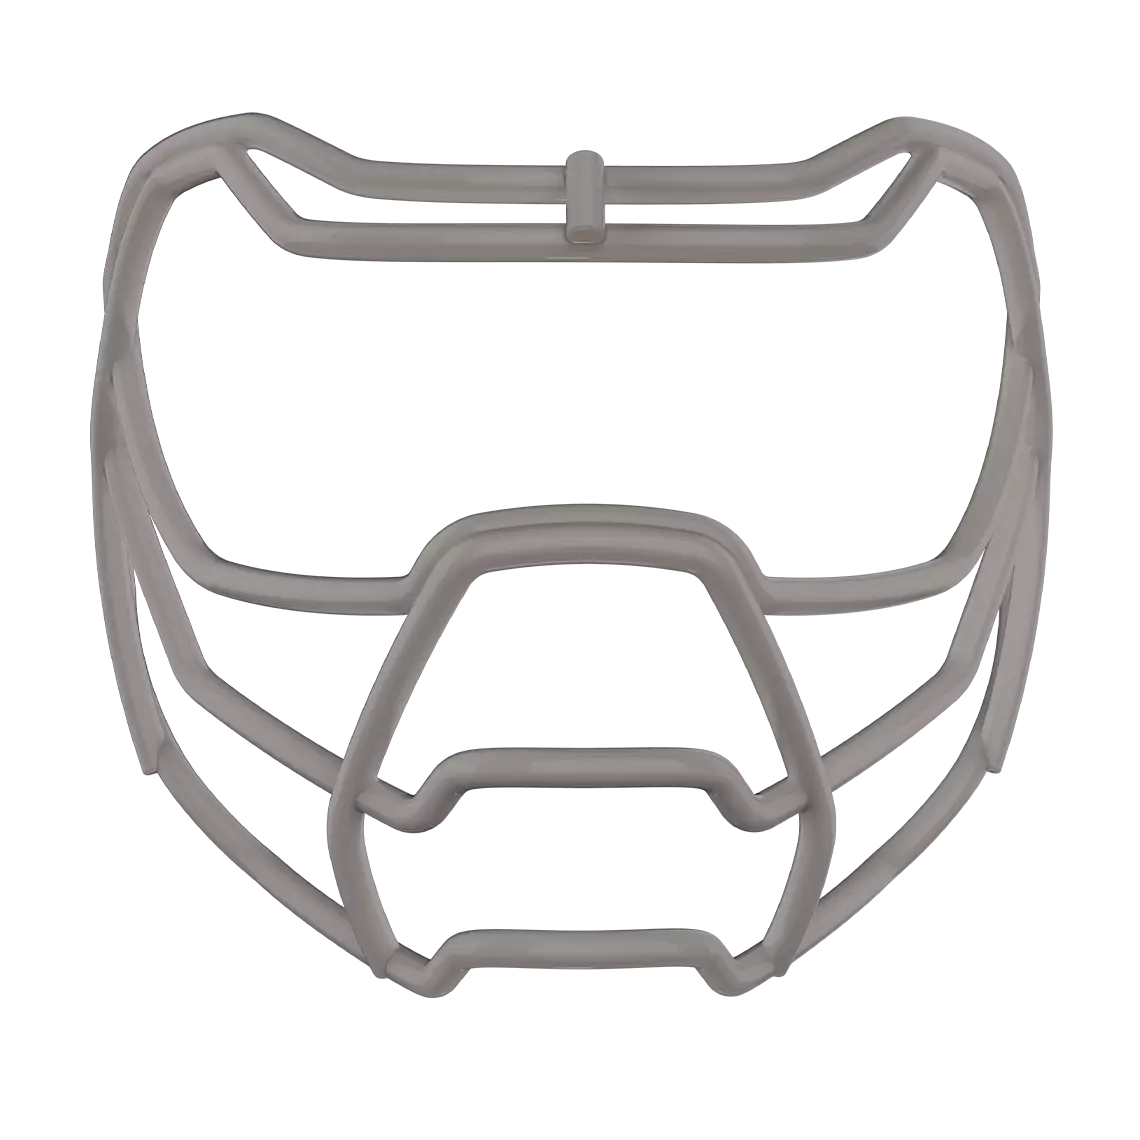 Gold Prowl face mask for football helmet.